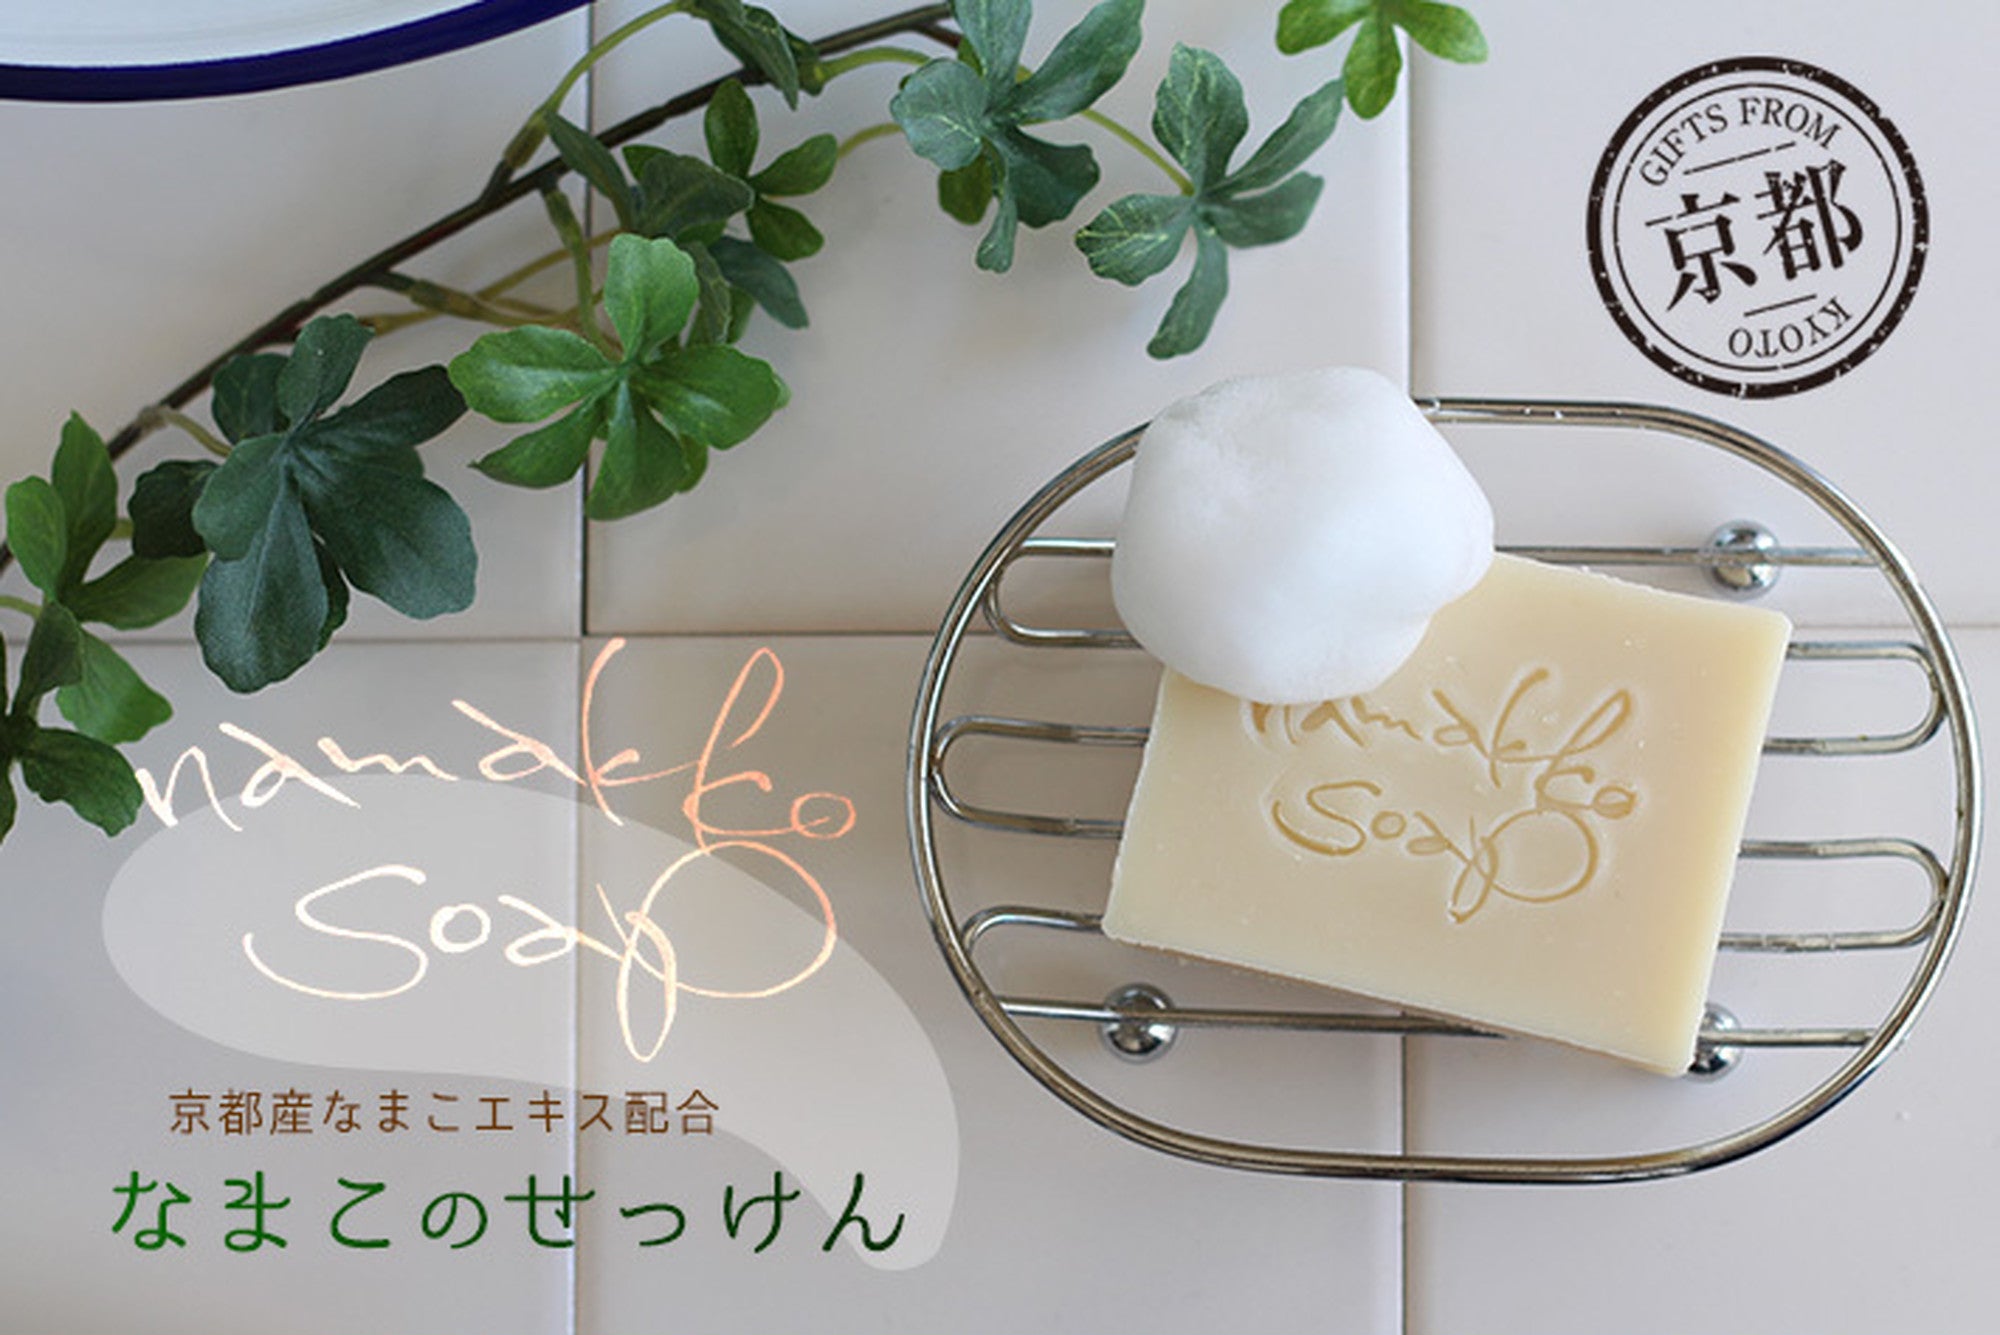 京都産なまこのせっけん namakko soap – 手作りせっけん専門店 Natural蒼